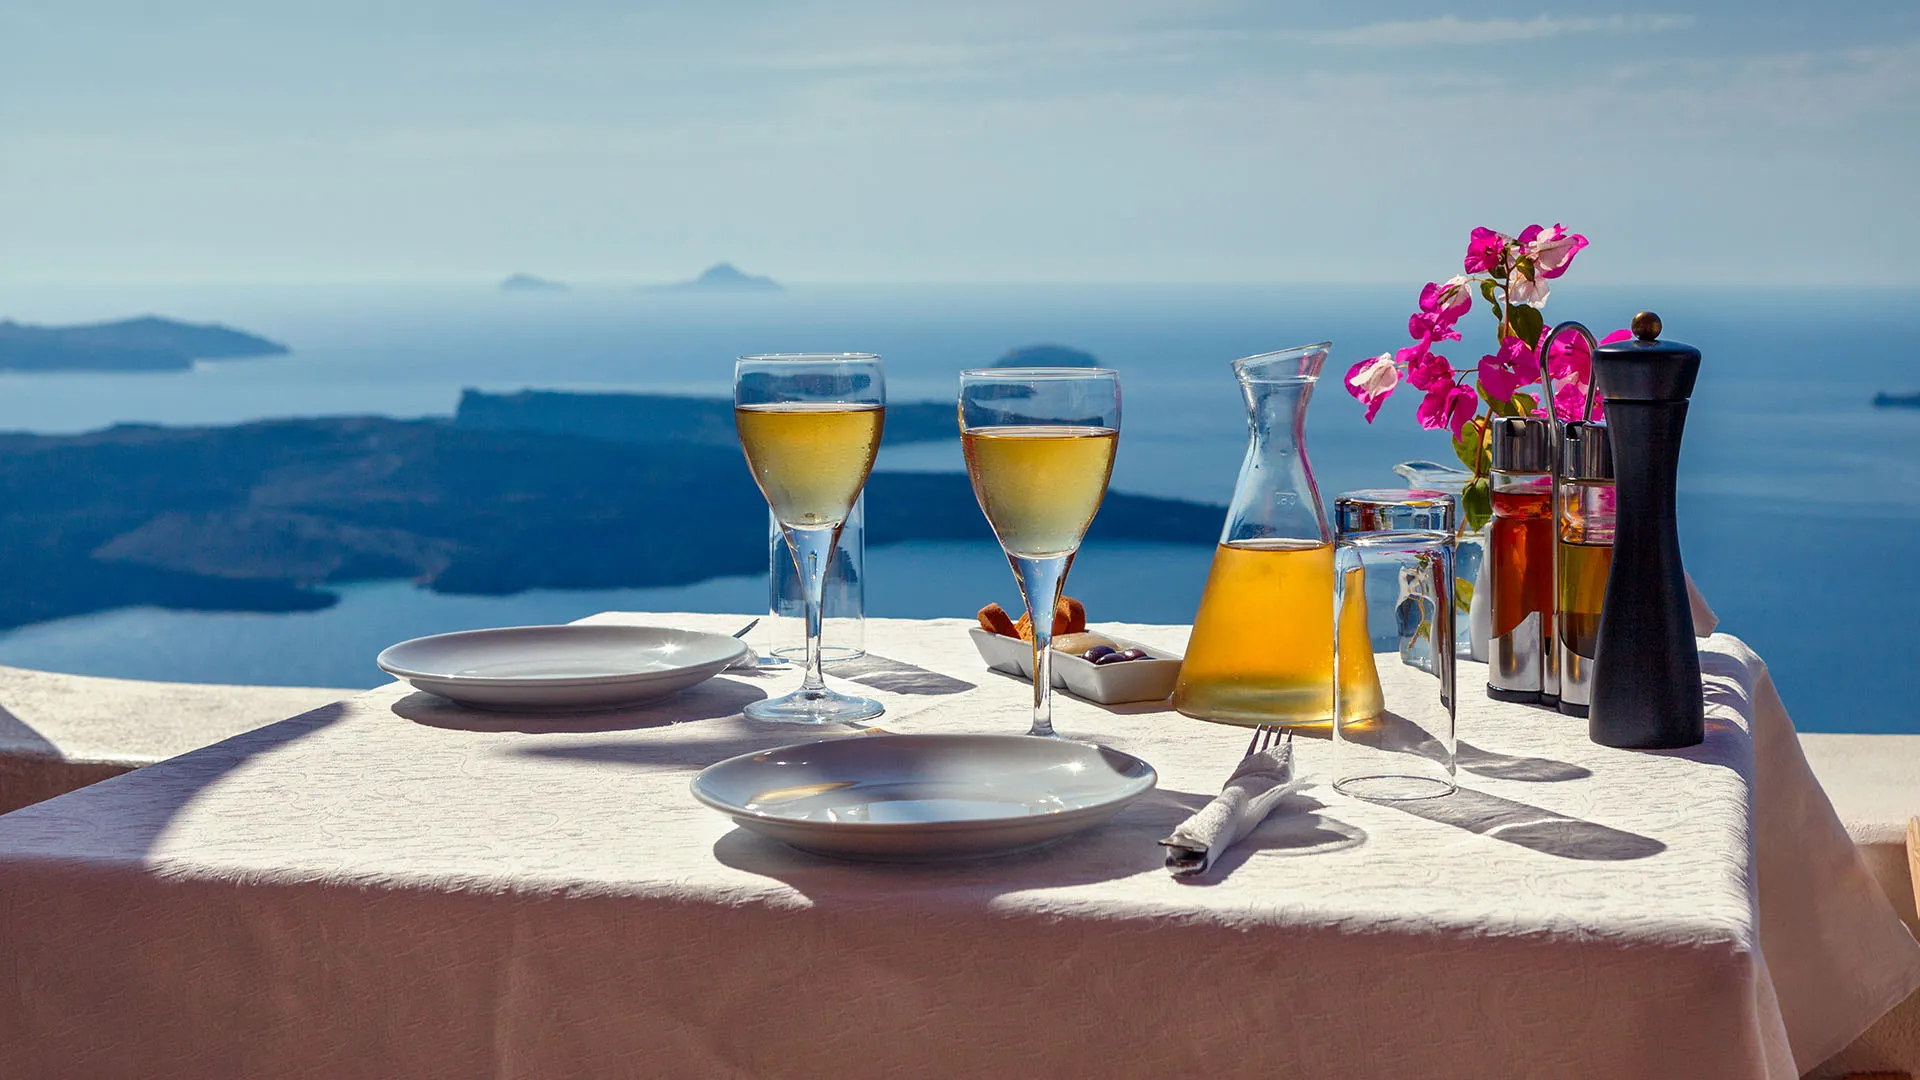 Τραπέζι και δύο ποτήρια κρασί στο νησί της Σαντορίνης